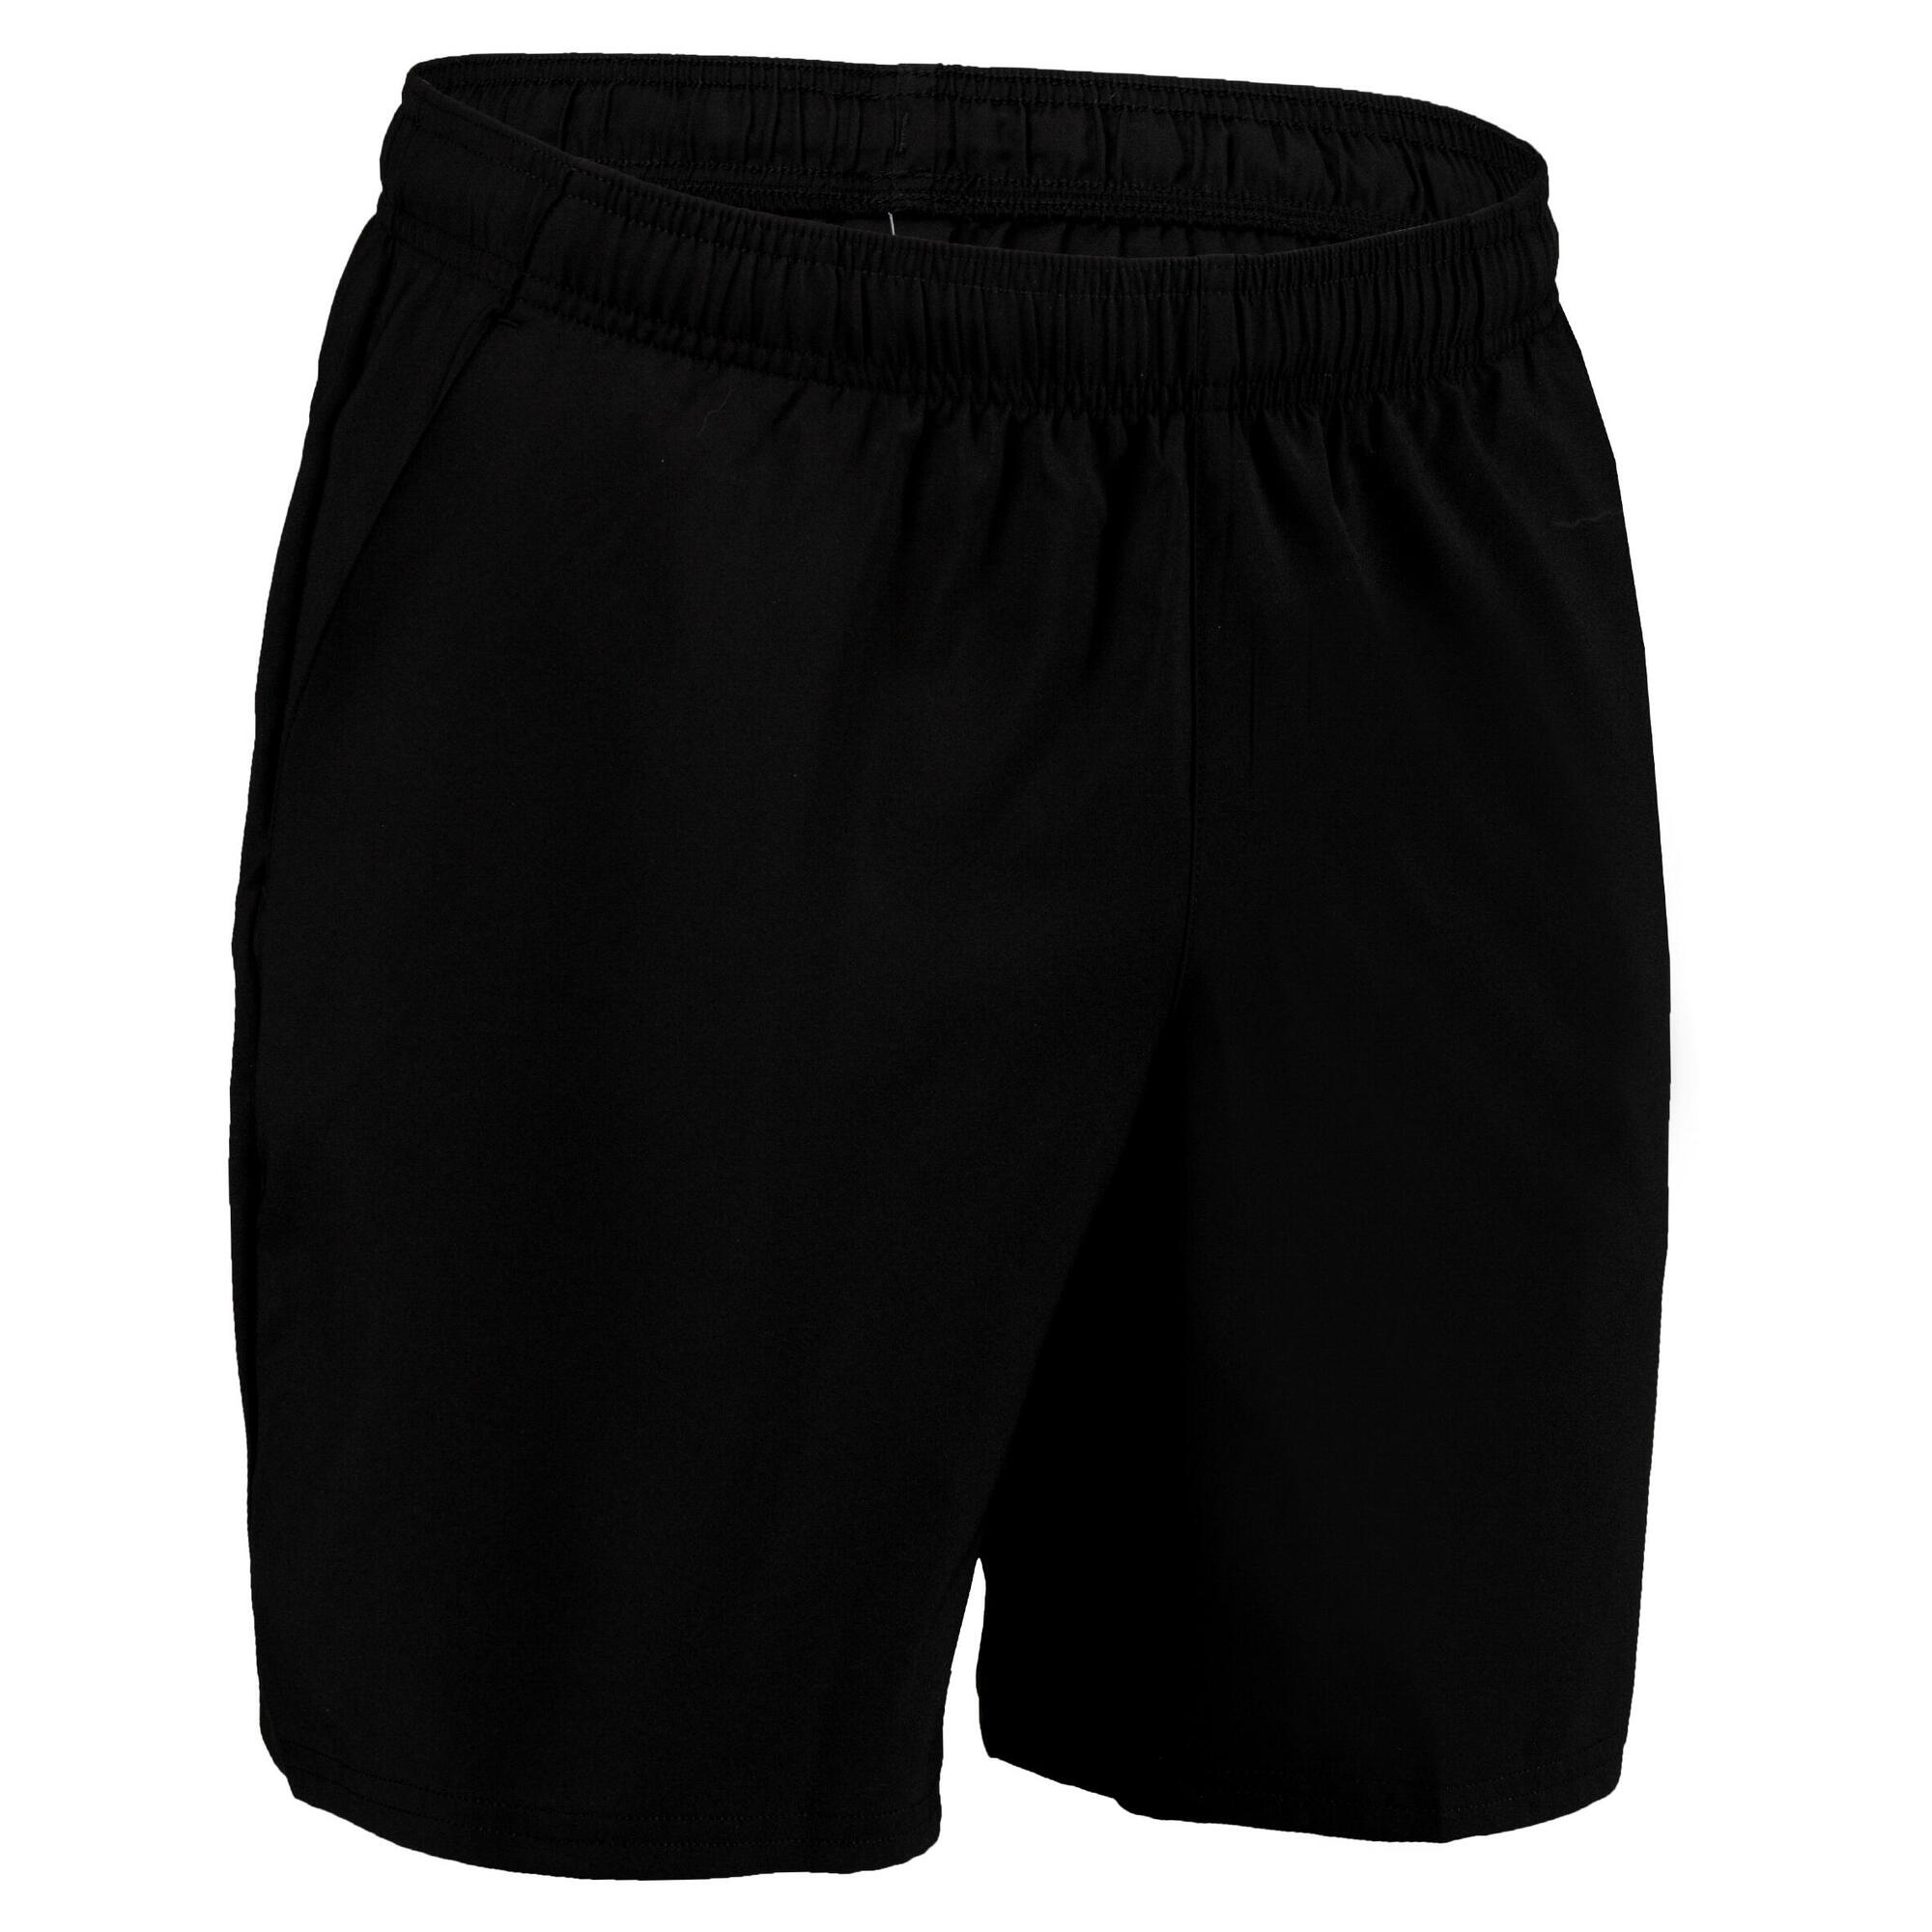 decathlon domyos shorts